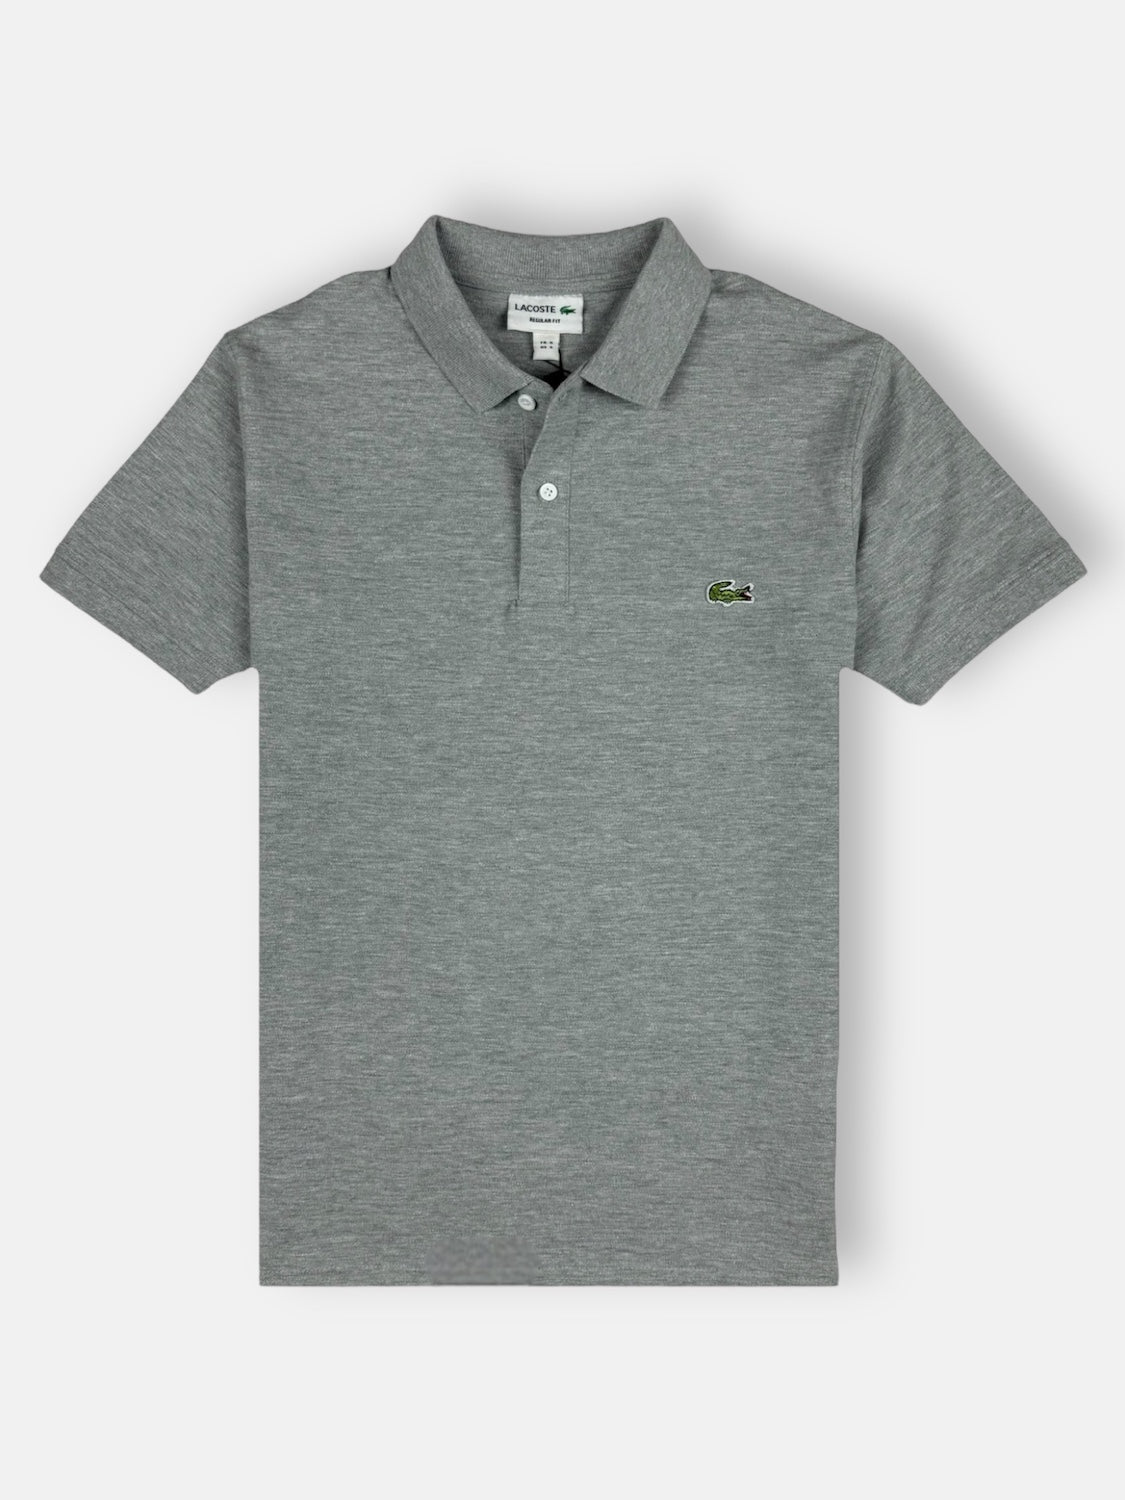 LCSTE Premium Polo Shirt (Heather Grey)